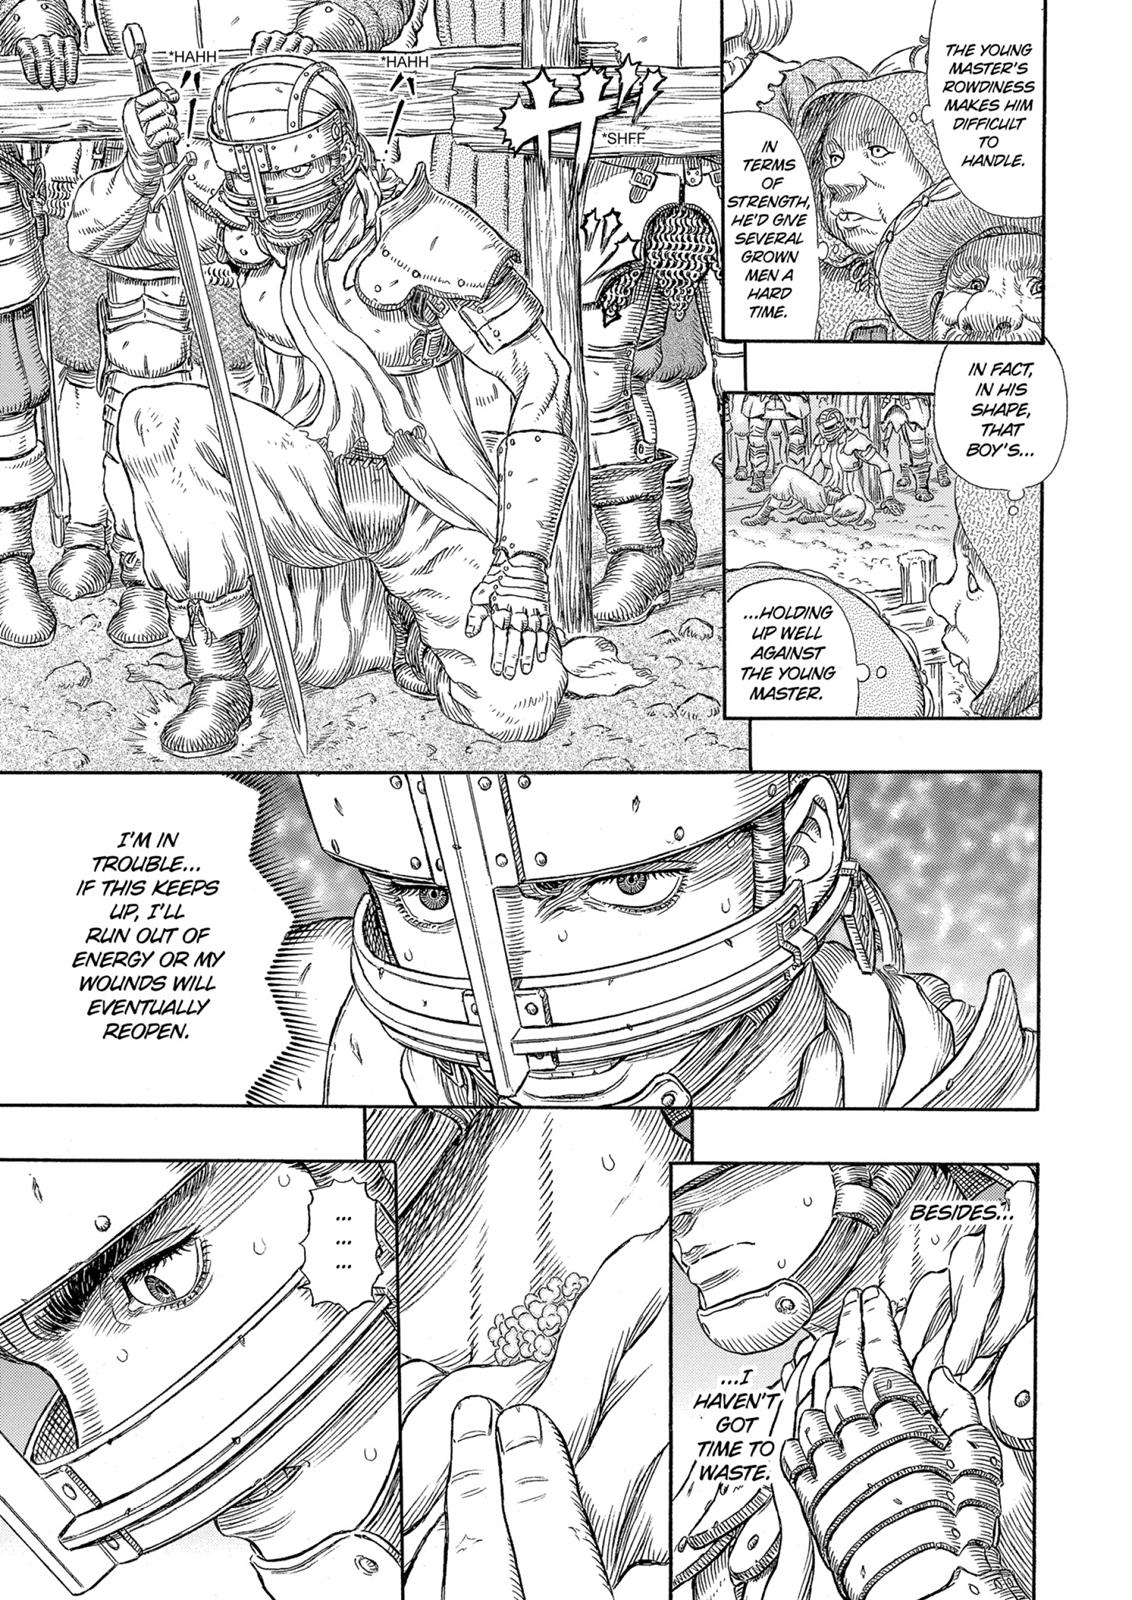 Berserk Manga Chapter 331 image 08